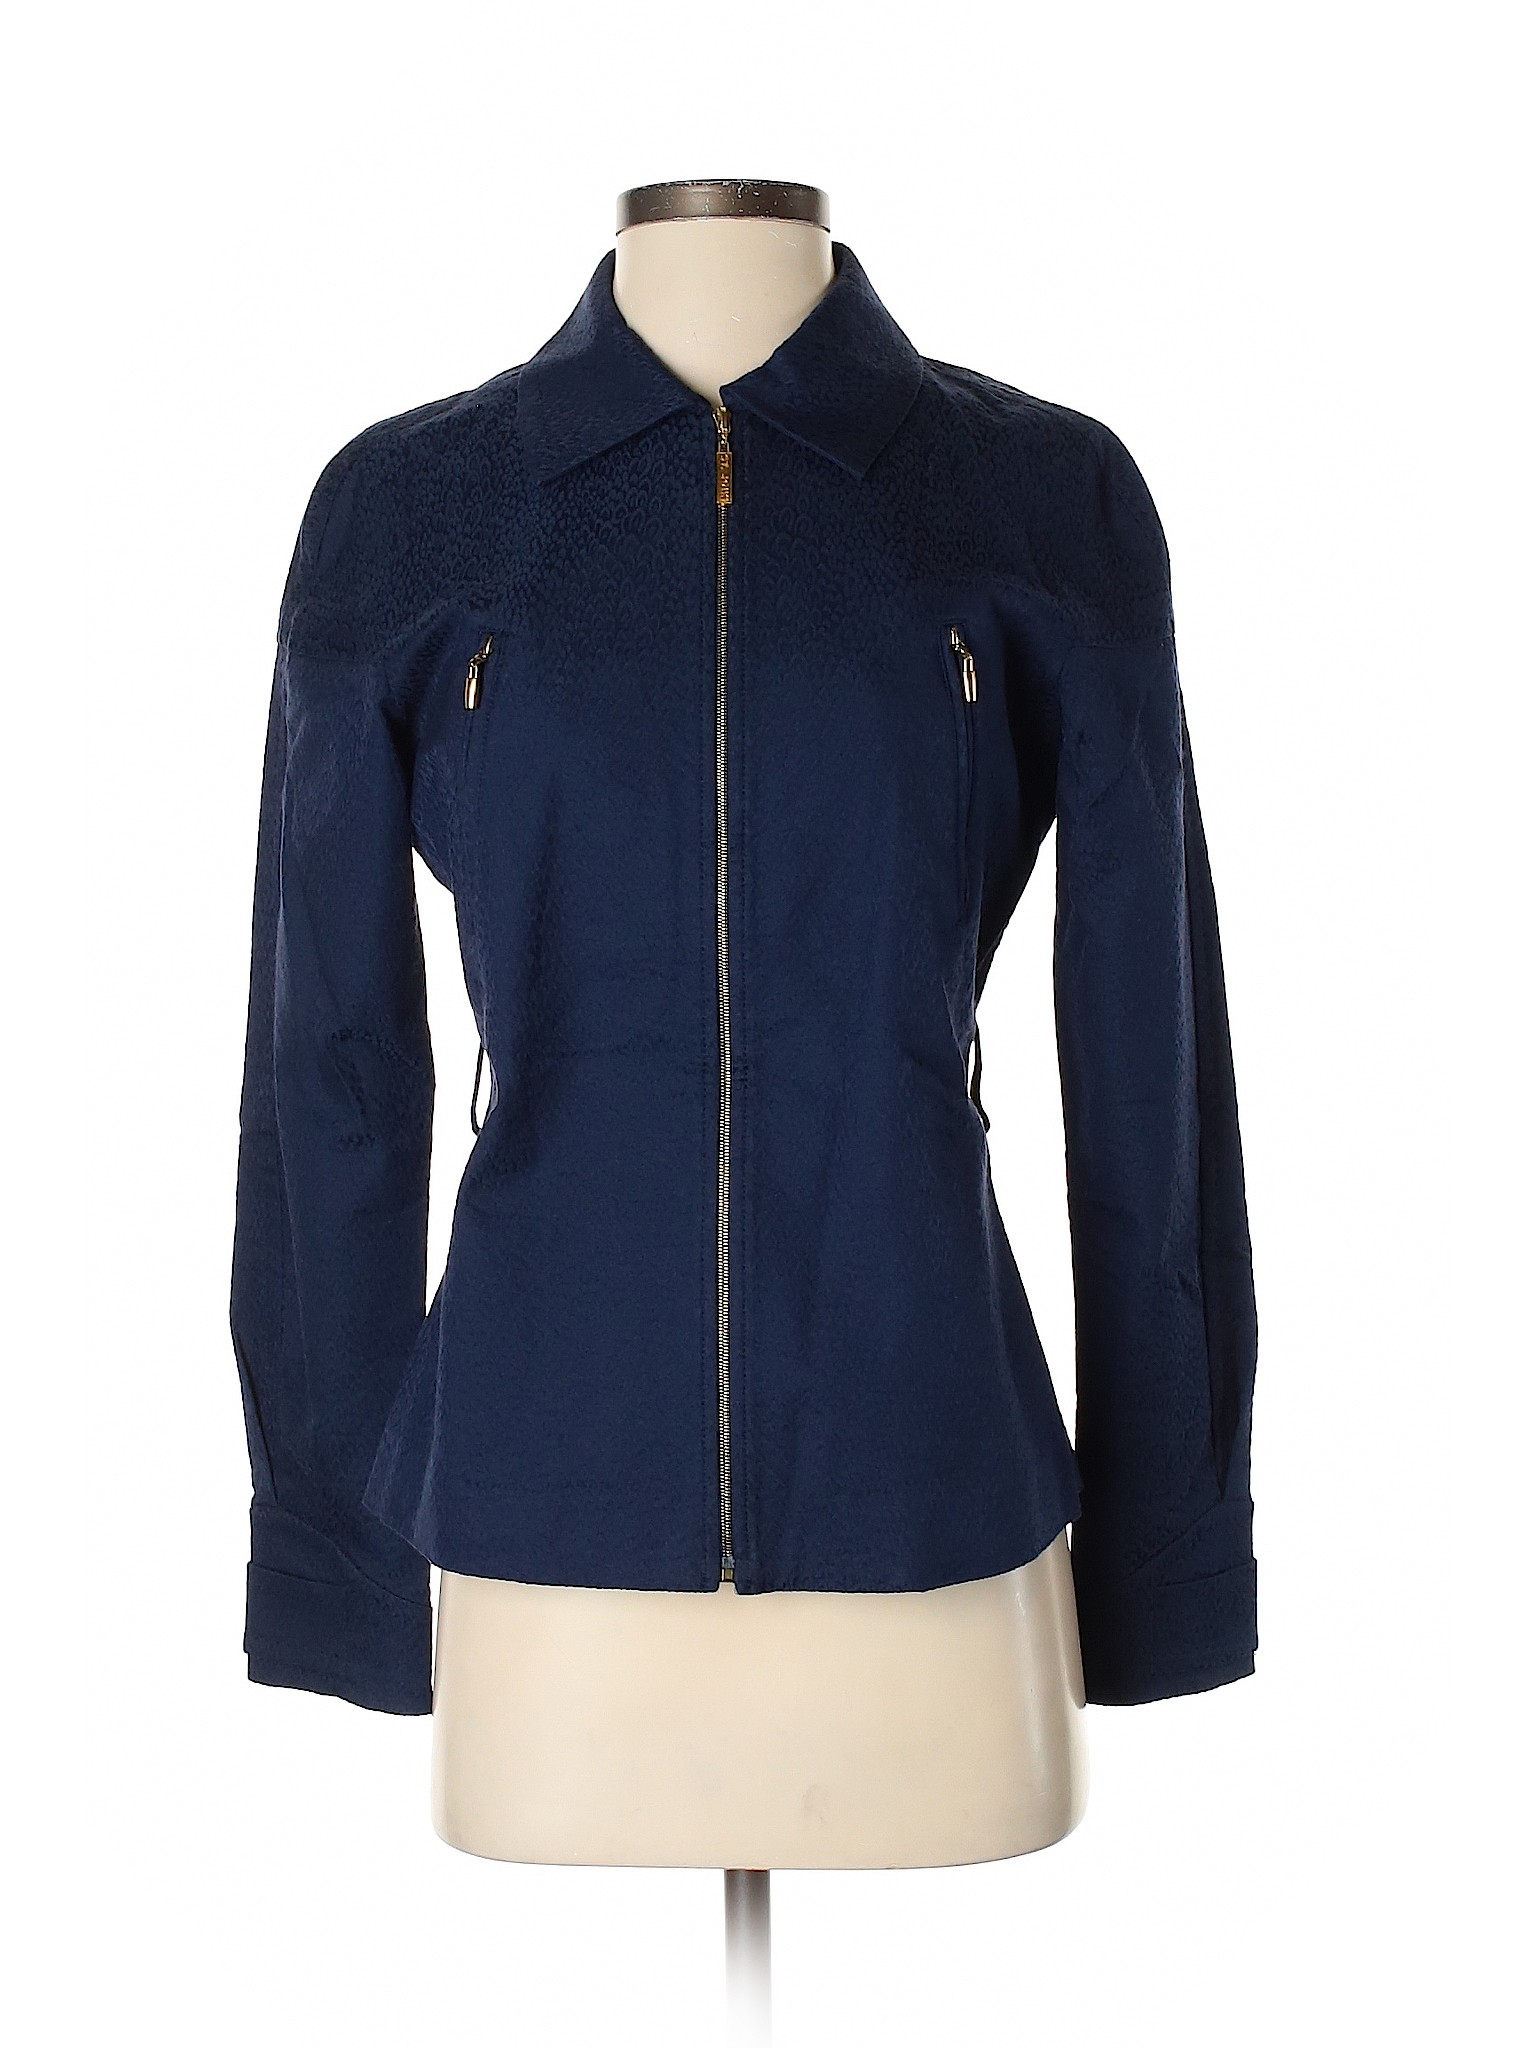 St. John Women Blue Jacket 2 | eBay